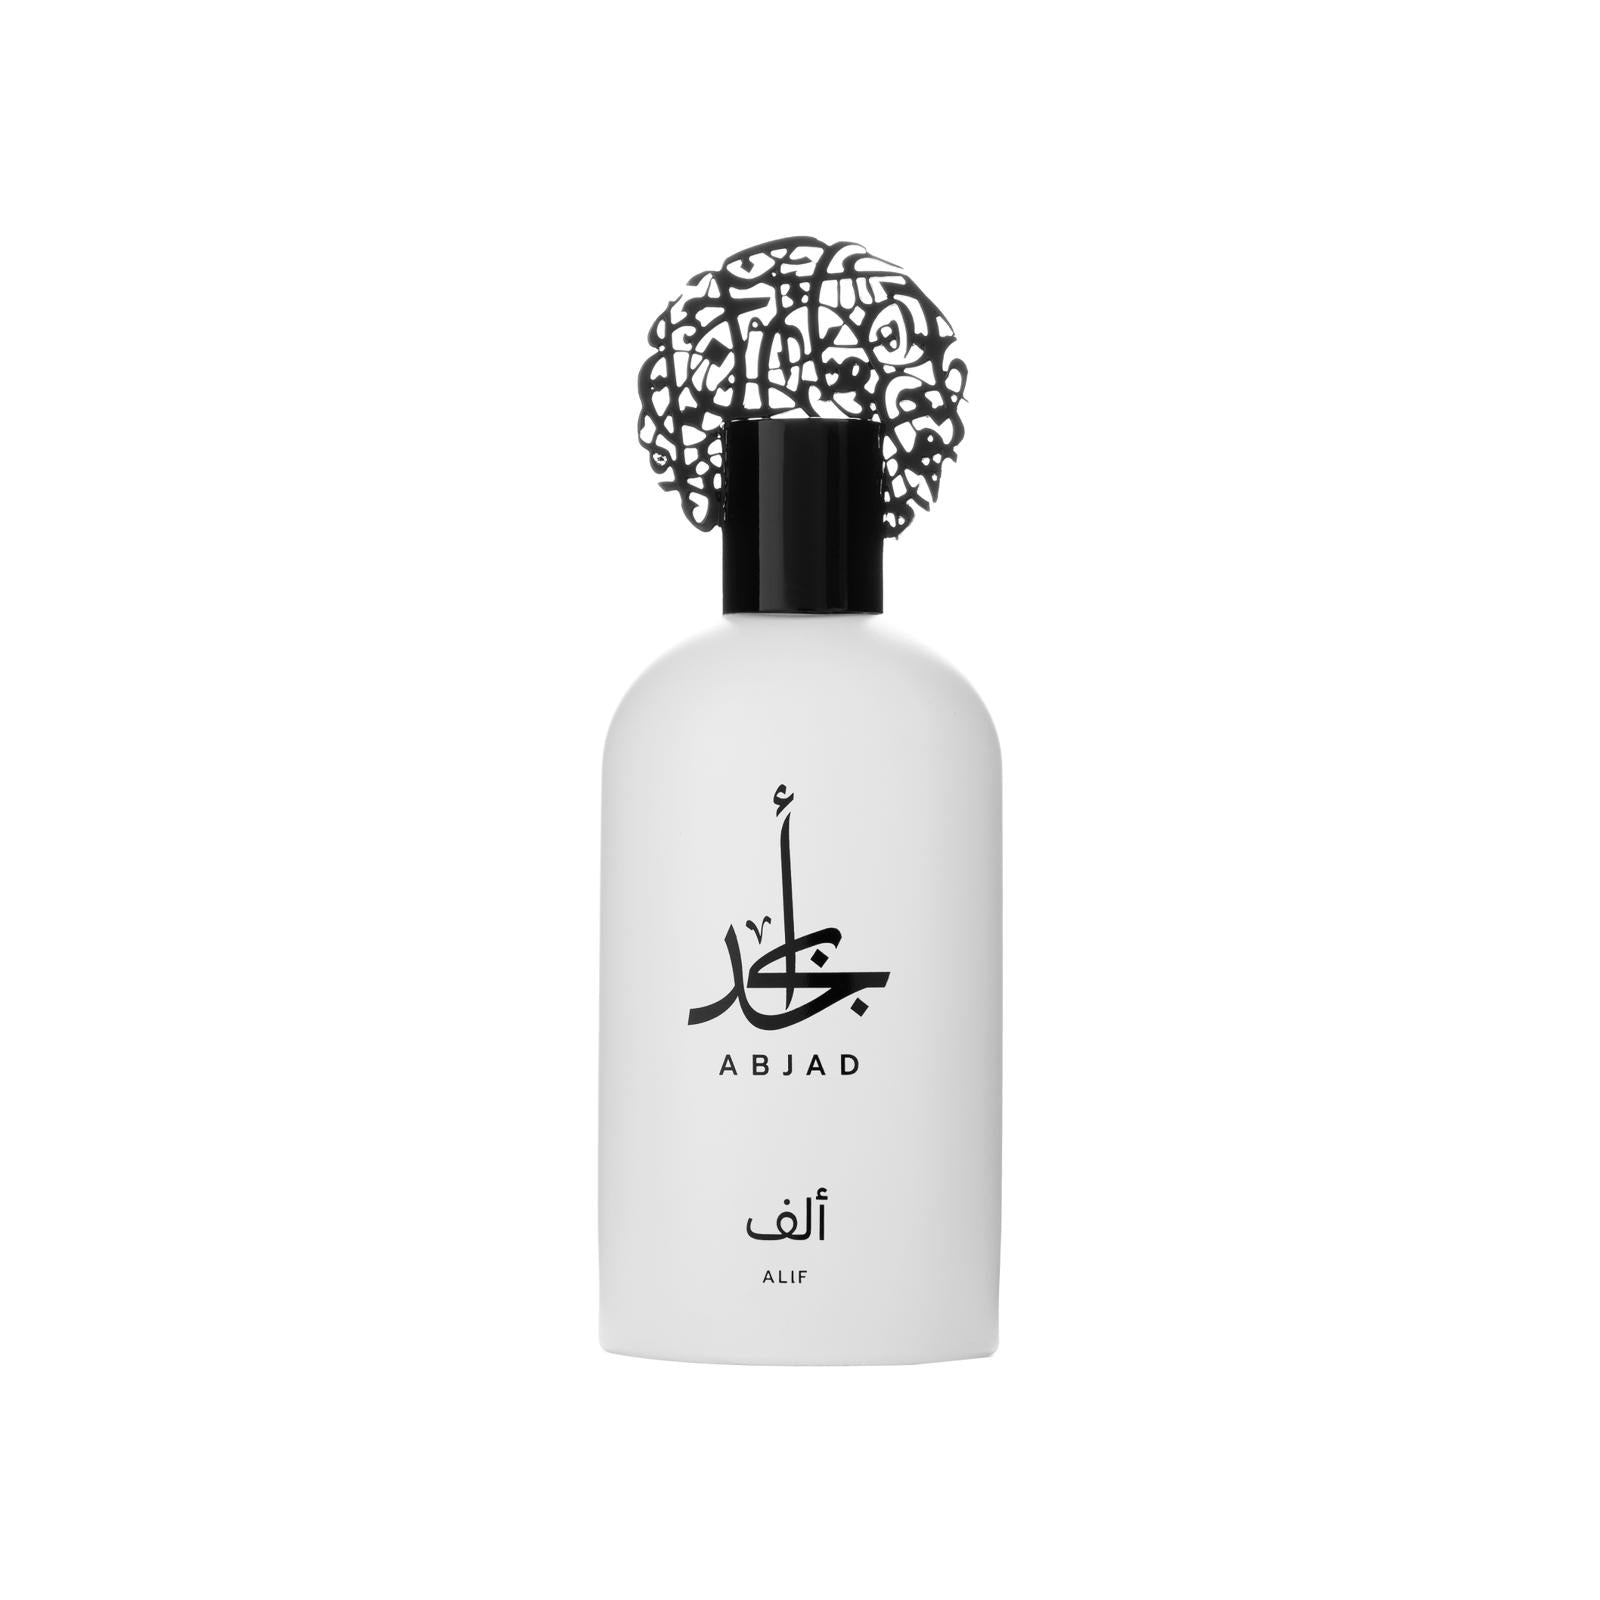 ALIF - abjad-perfume